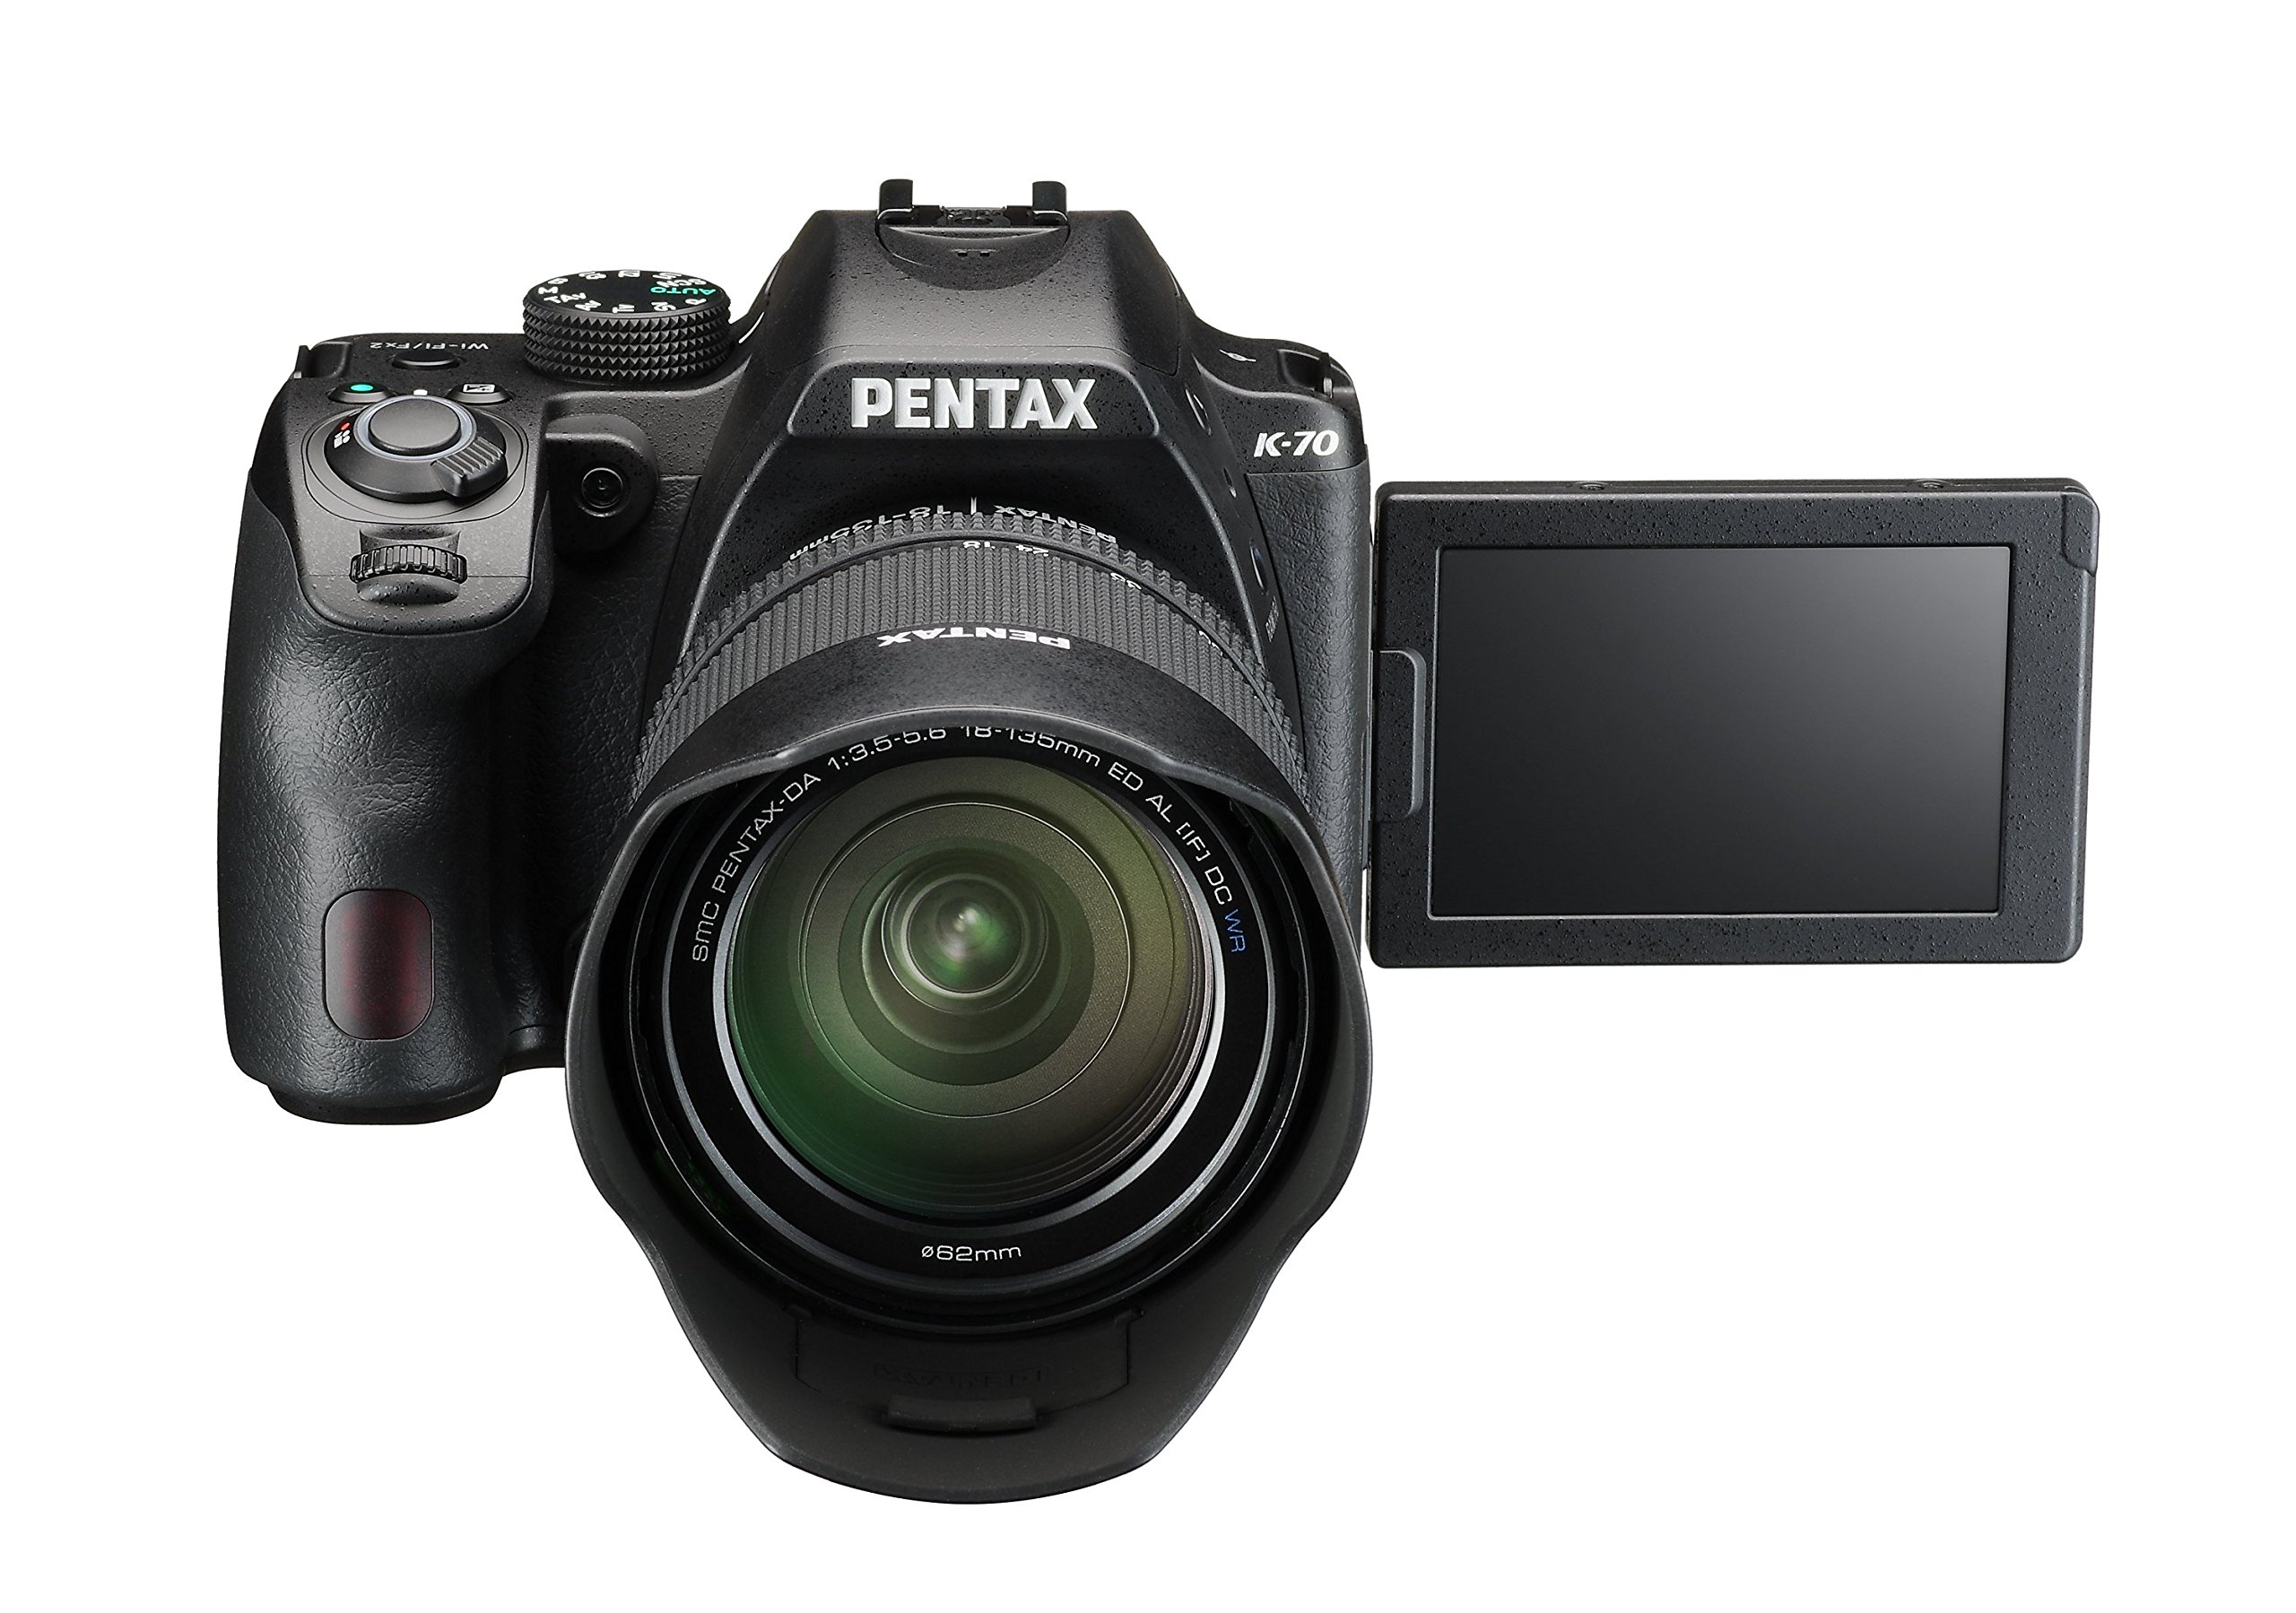 Pentax K-70 Weather-Sealed DSLR Camera with 18-135mm Lens (Black)